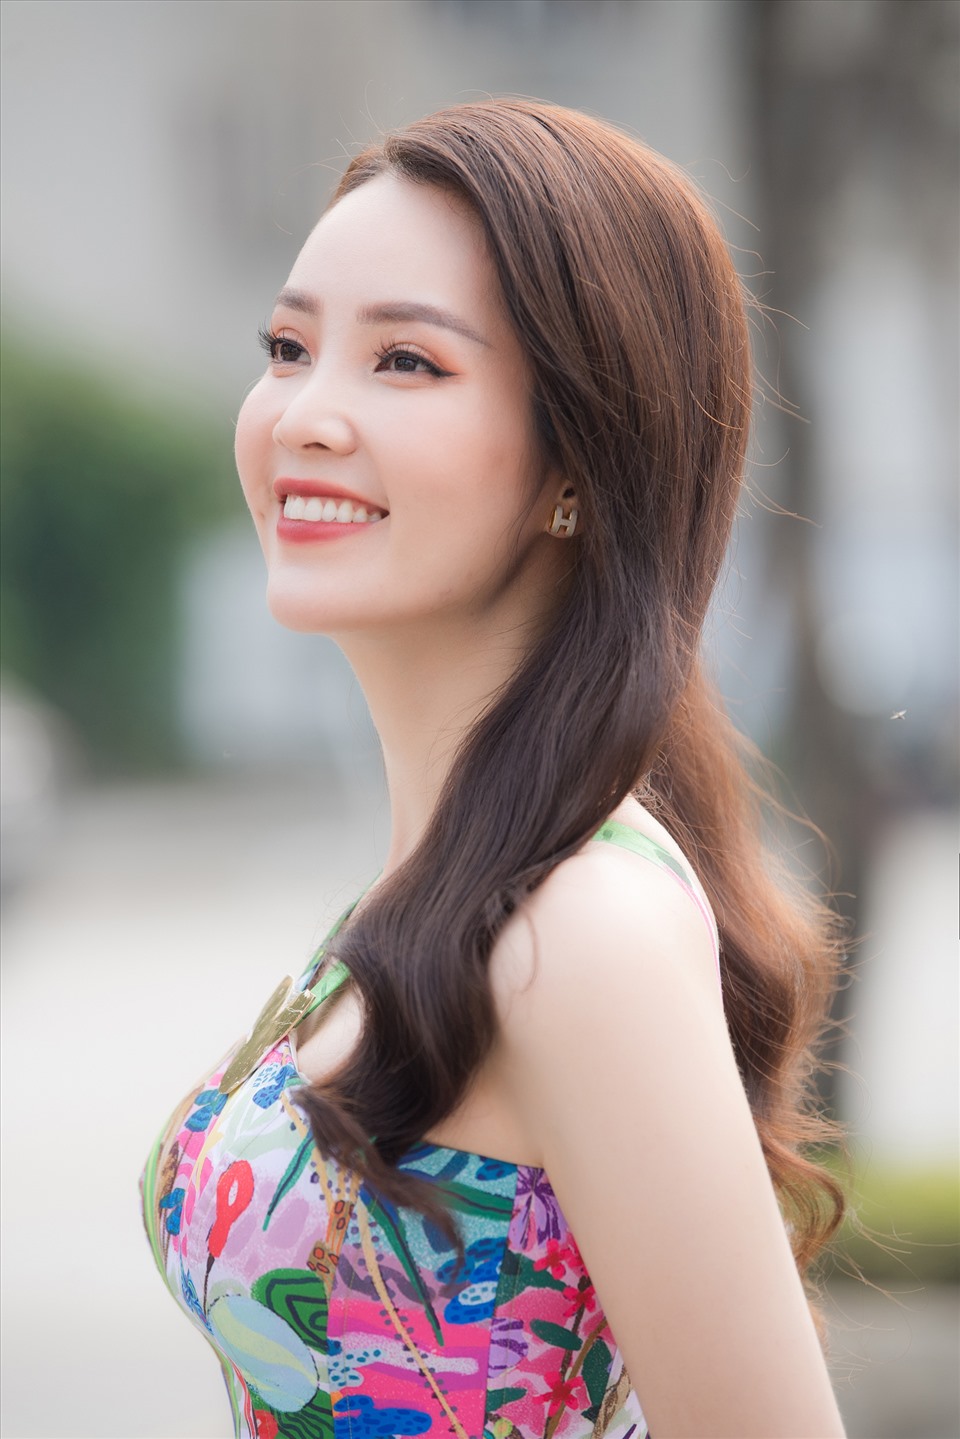 Á hậu Thuỵ Vân cũng là một trong những người đẹp bước ra từ Hoa hậu Việt Na có cuộc viên mãn nhất. Không chỉ thành công trong công việc cô còn có cuộc sống hạnh phúc cùng chồng và con trai. Ảnh: Vũ Toàn.